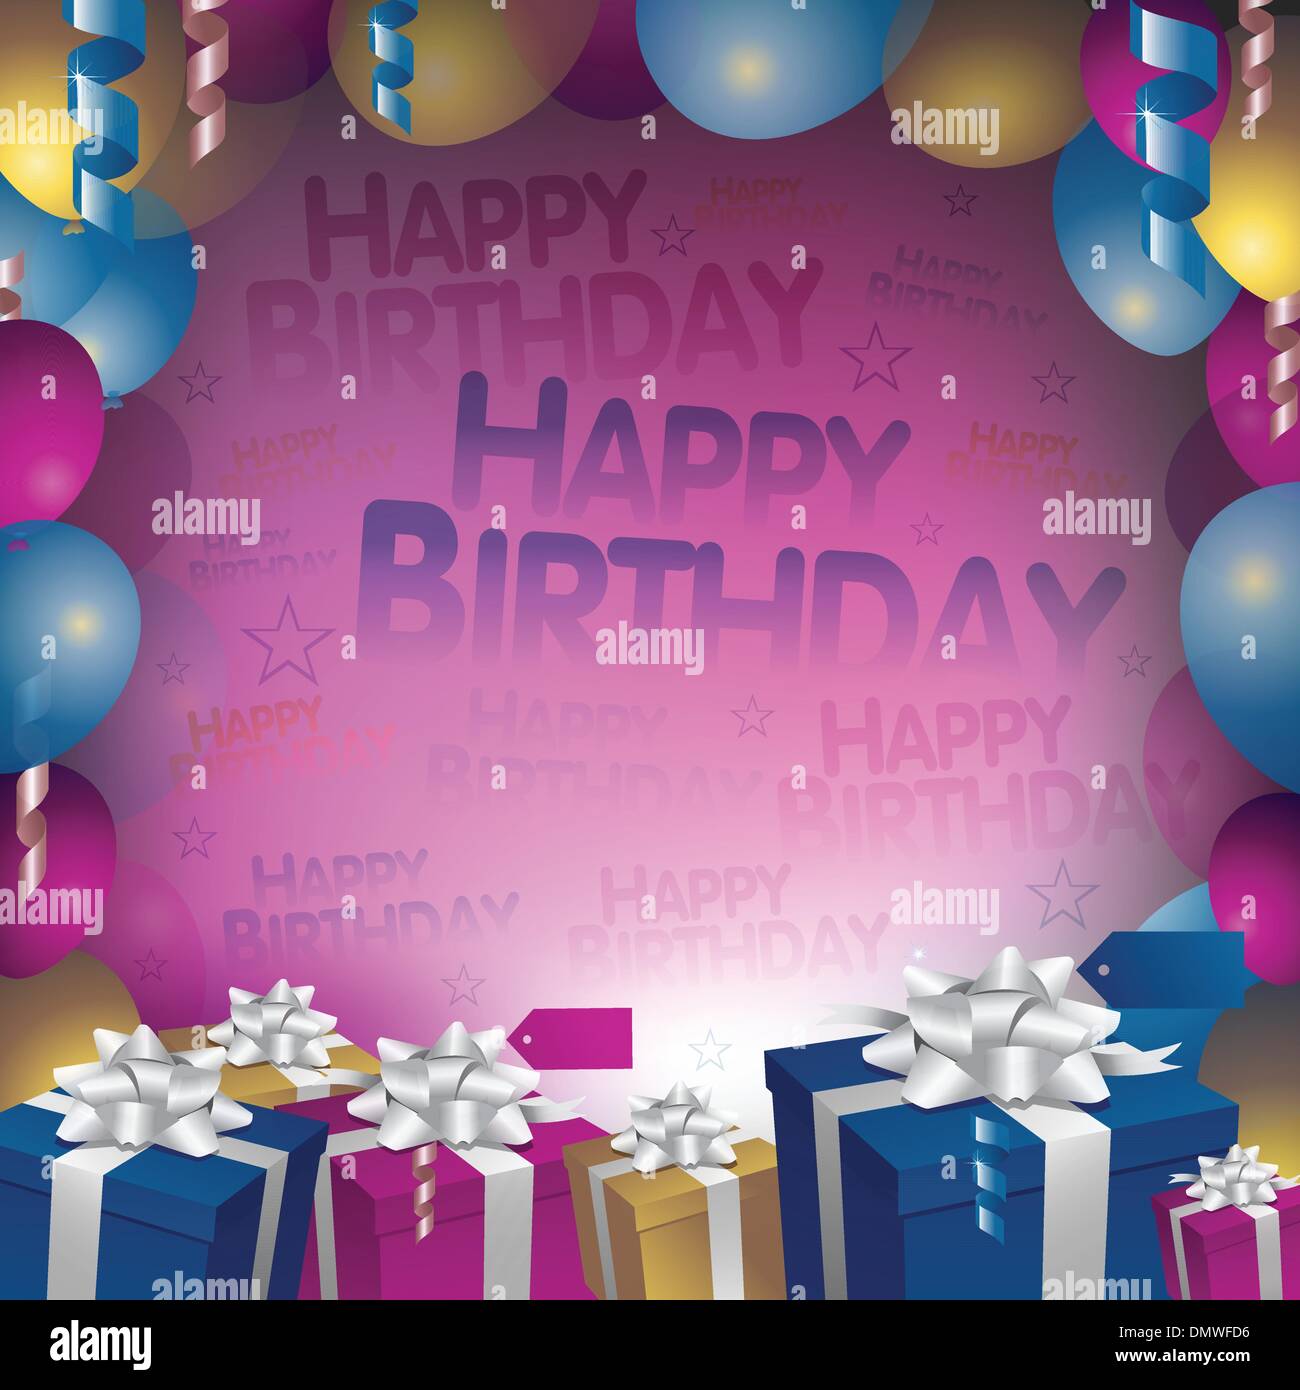 Happy birthday background Stock Vector Image & Art - Alamy